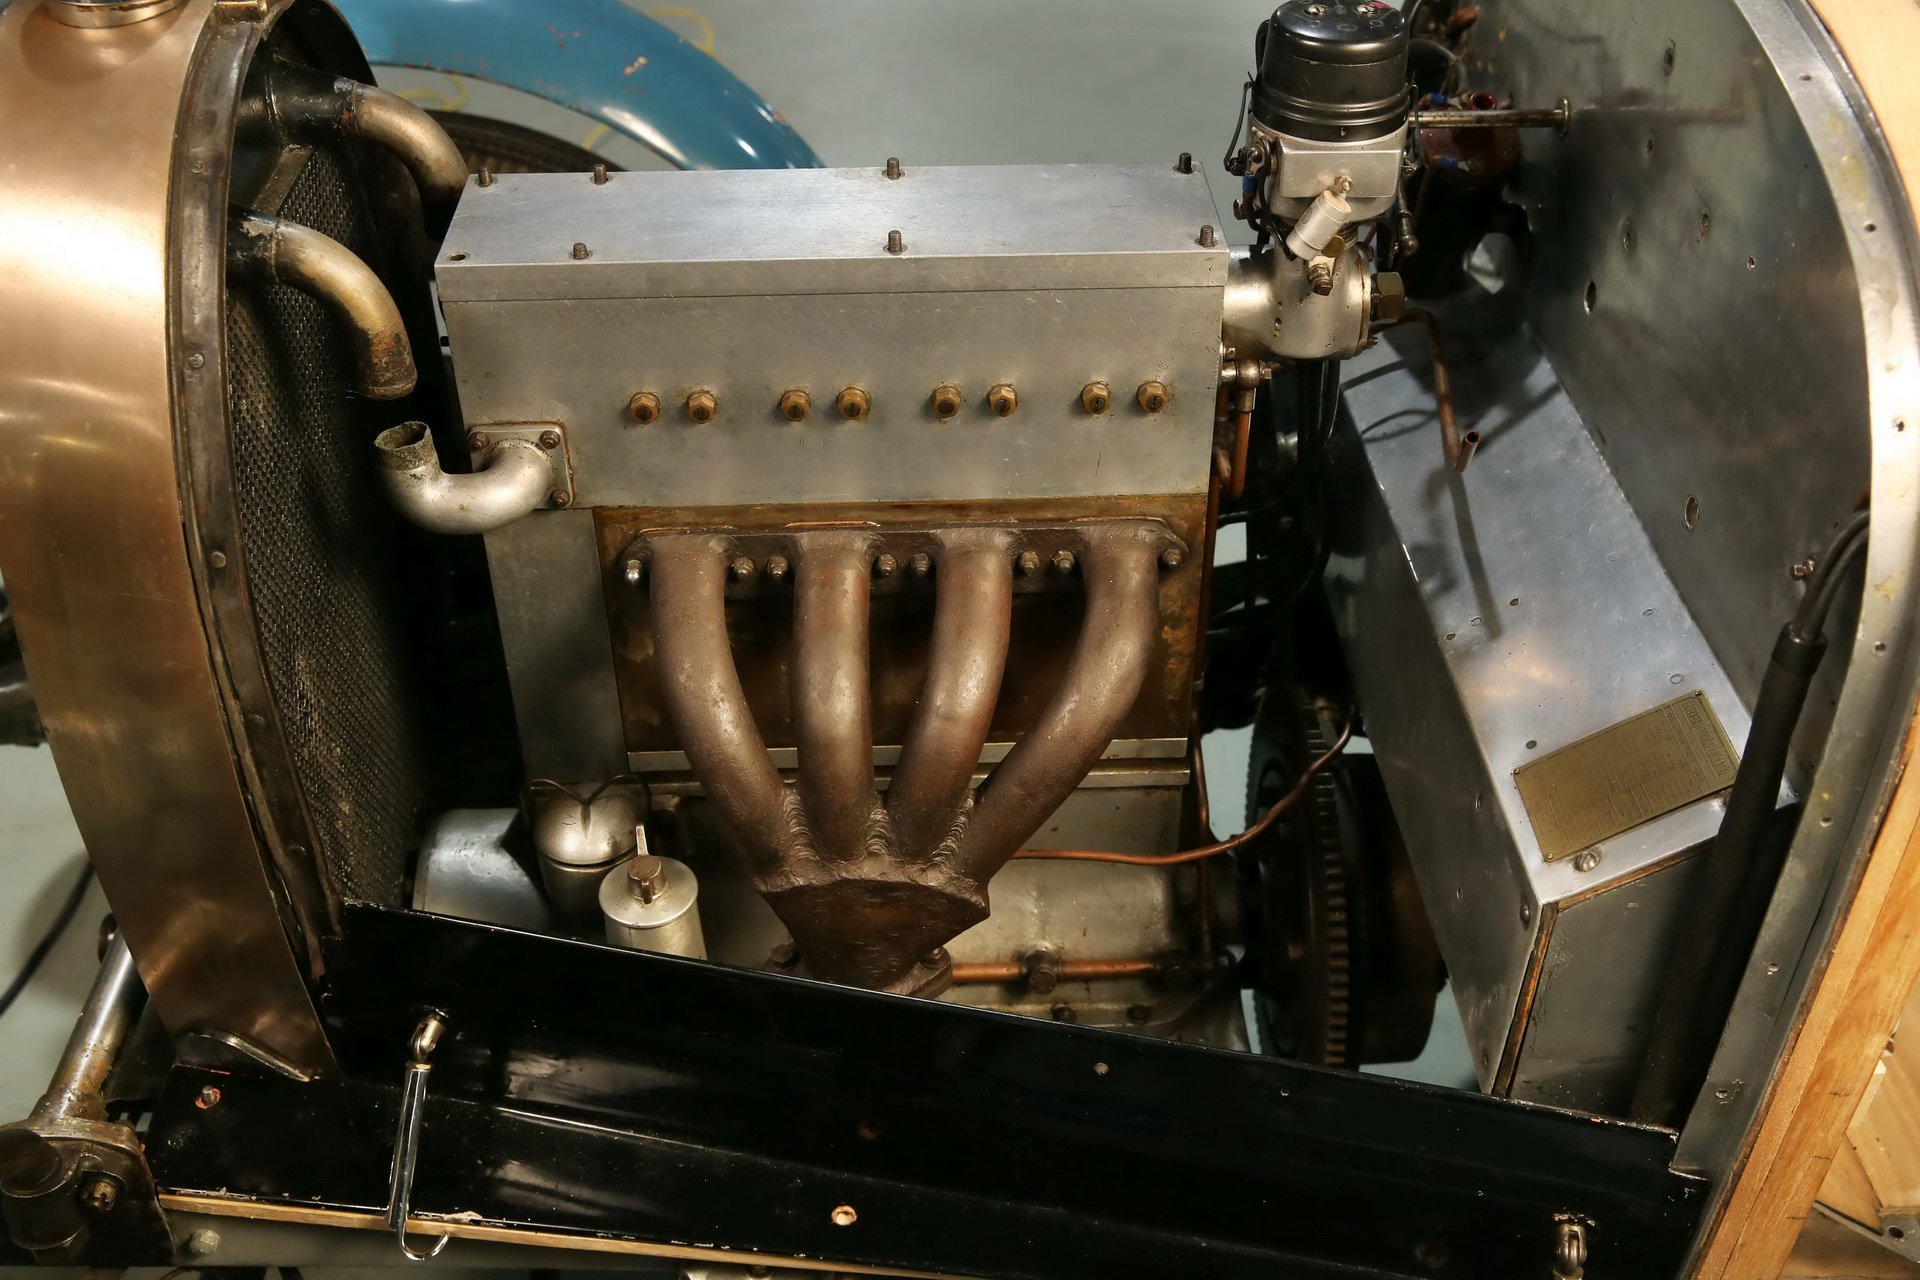 Zabarikádovaná stodola ukrývala sbírku vozů Bugatti